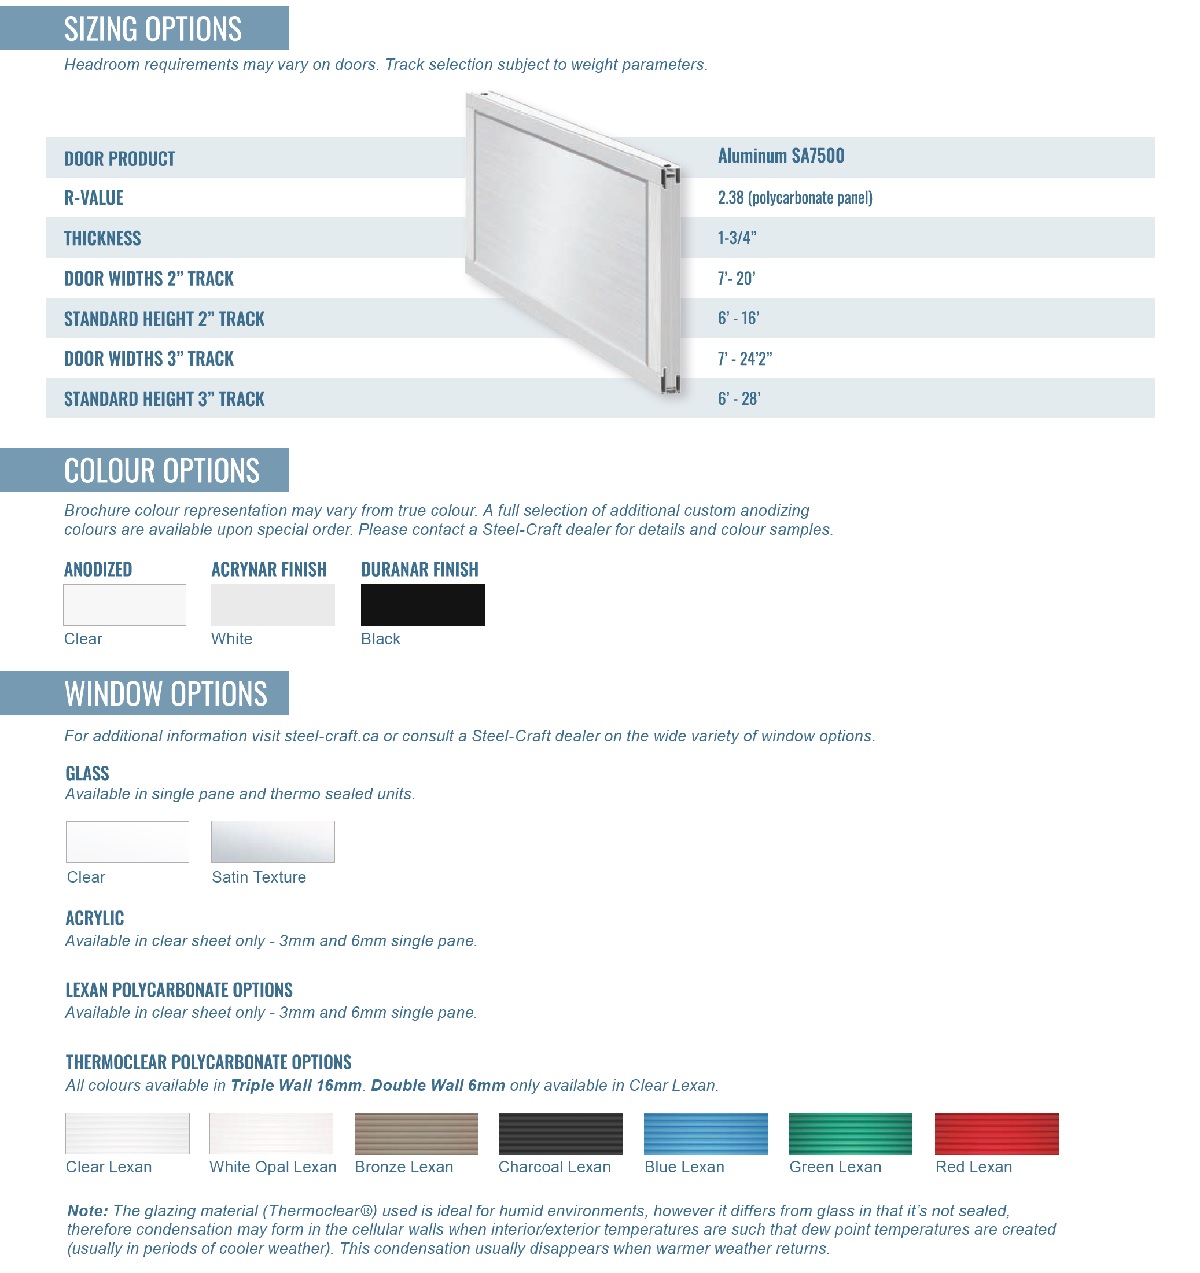 Steel-Craft SA7500 Aluminum Overhead Door